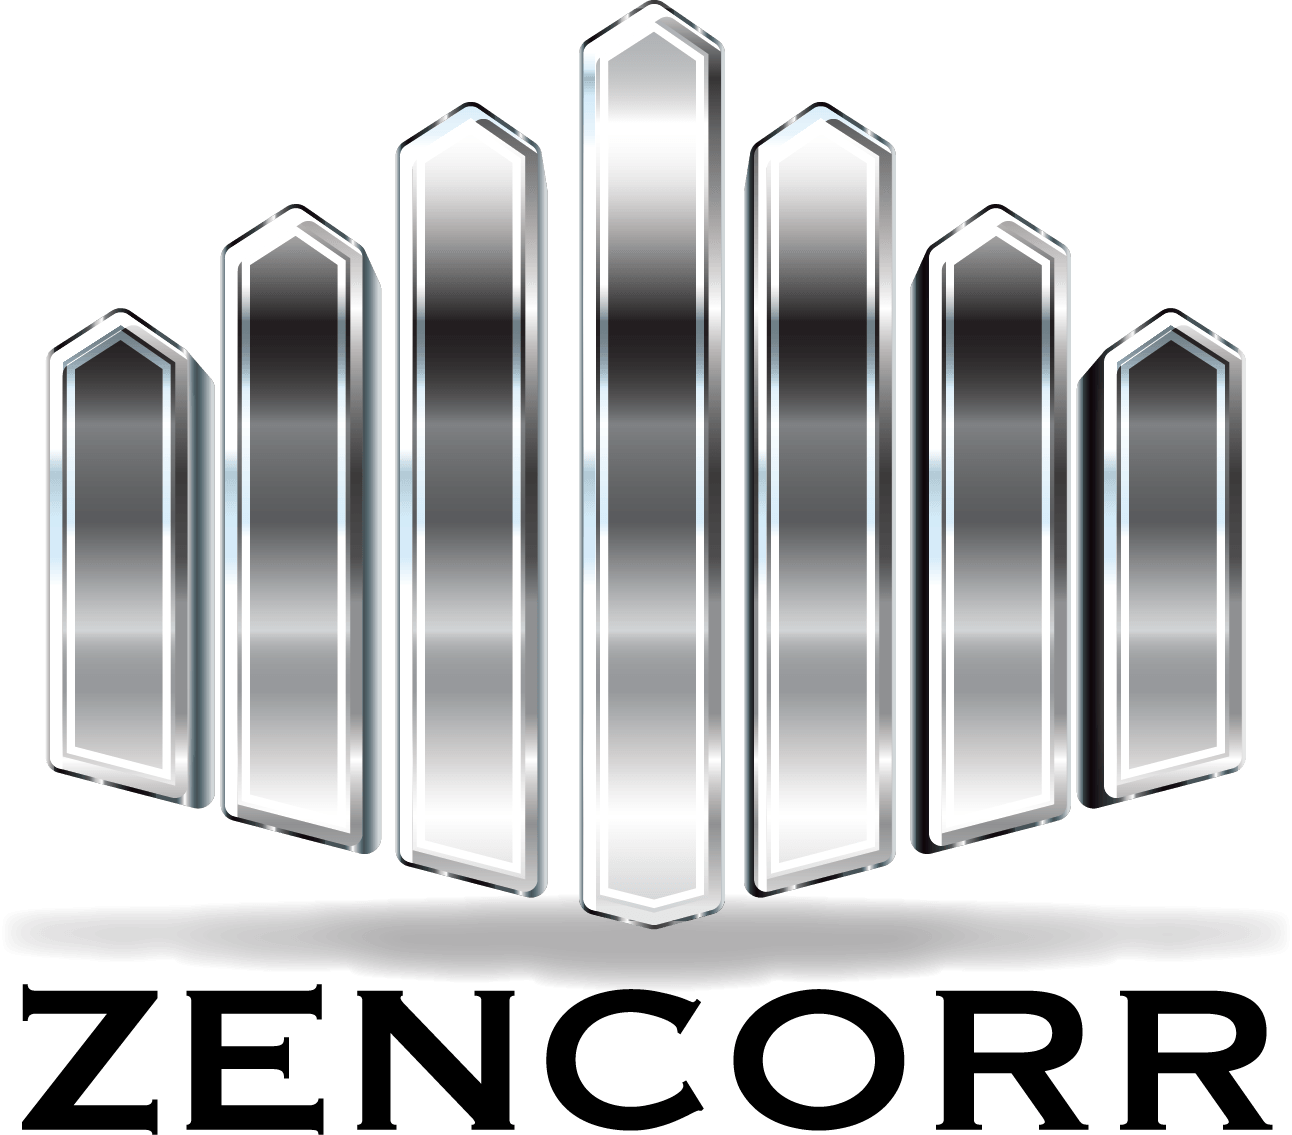 zencorr logo